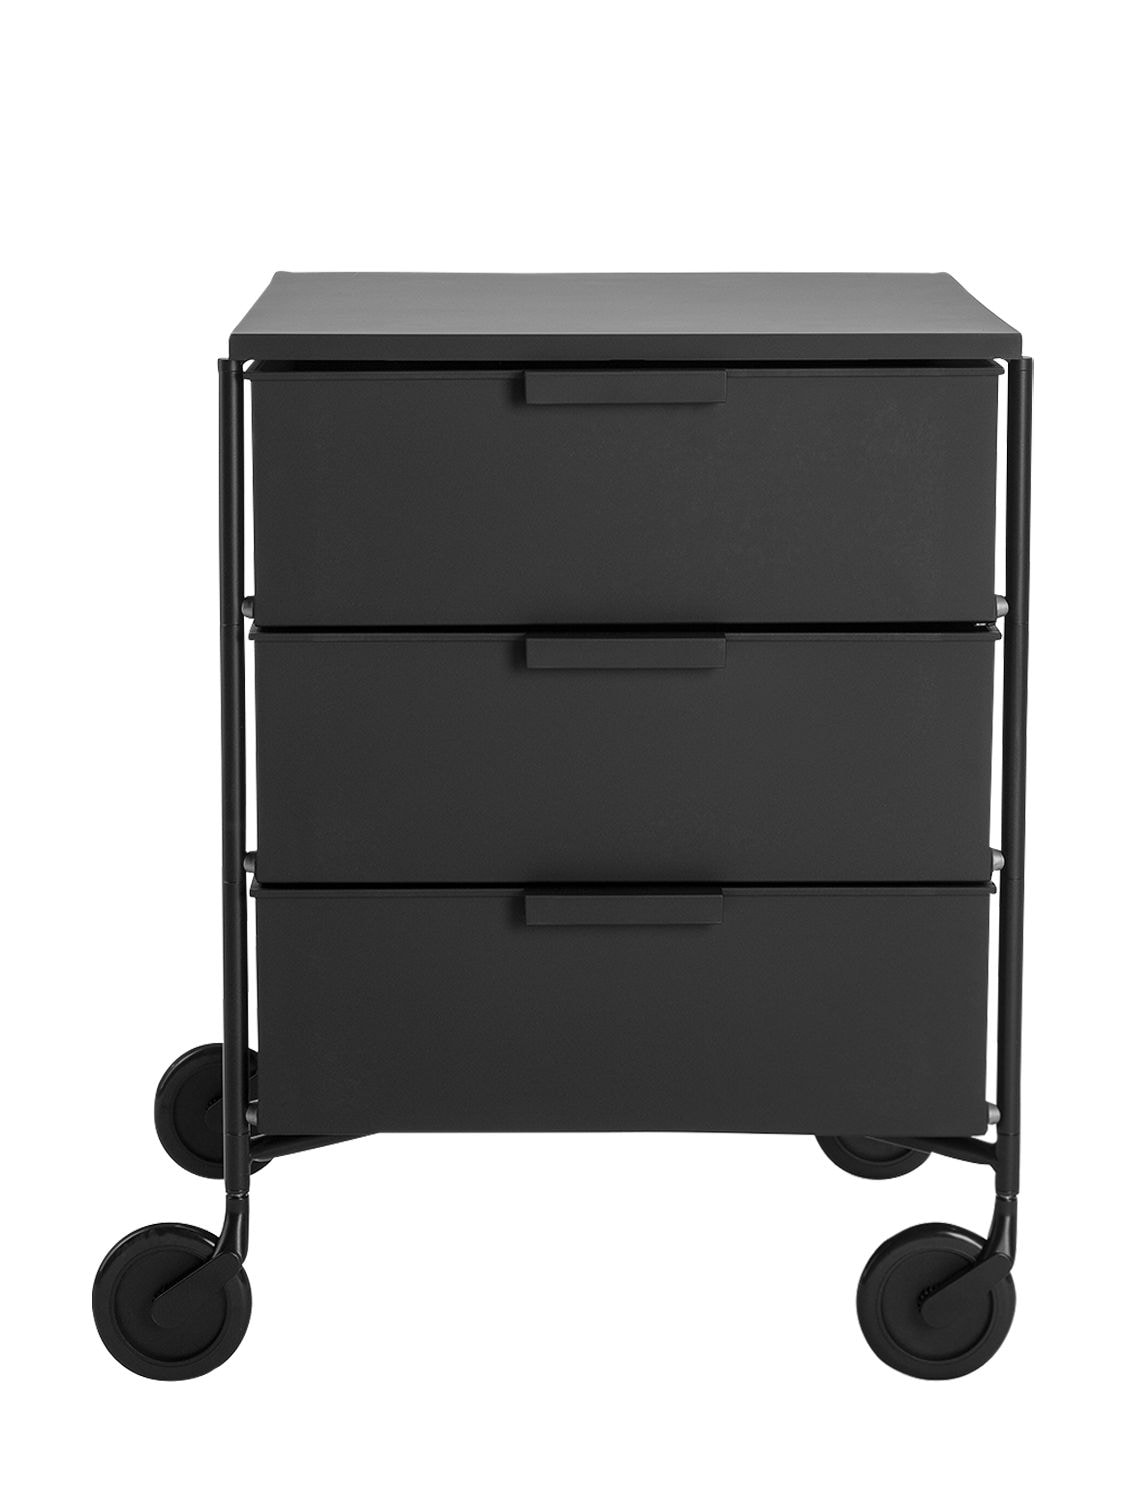 Kartell Mobil Matt Cabinet W/ Wheels In Black